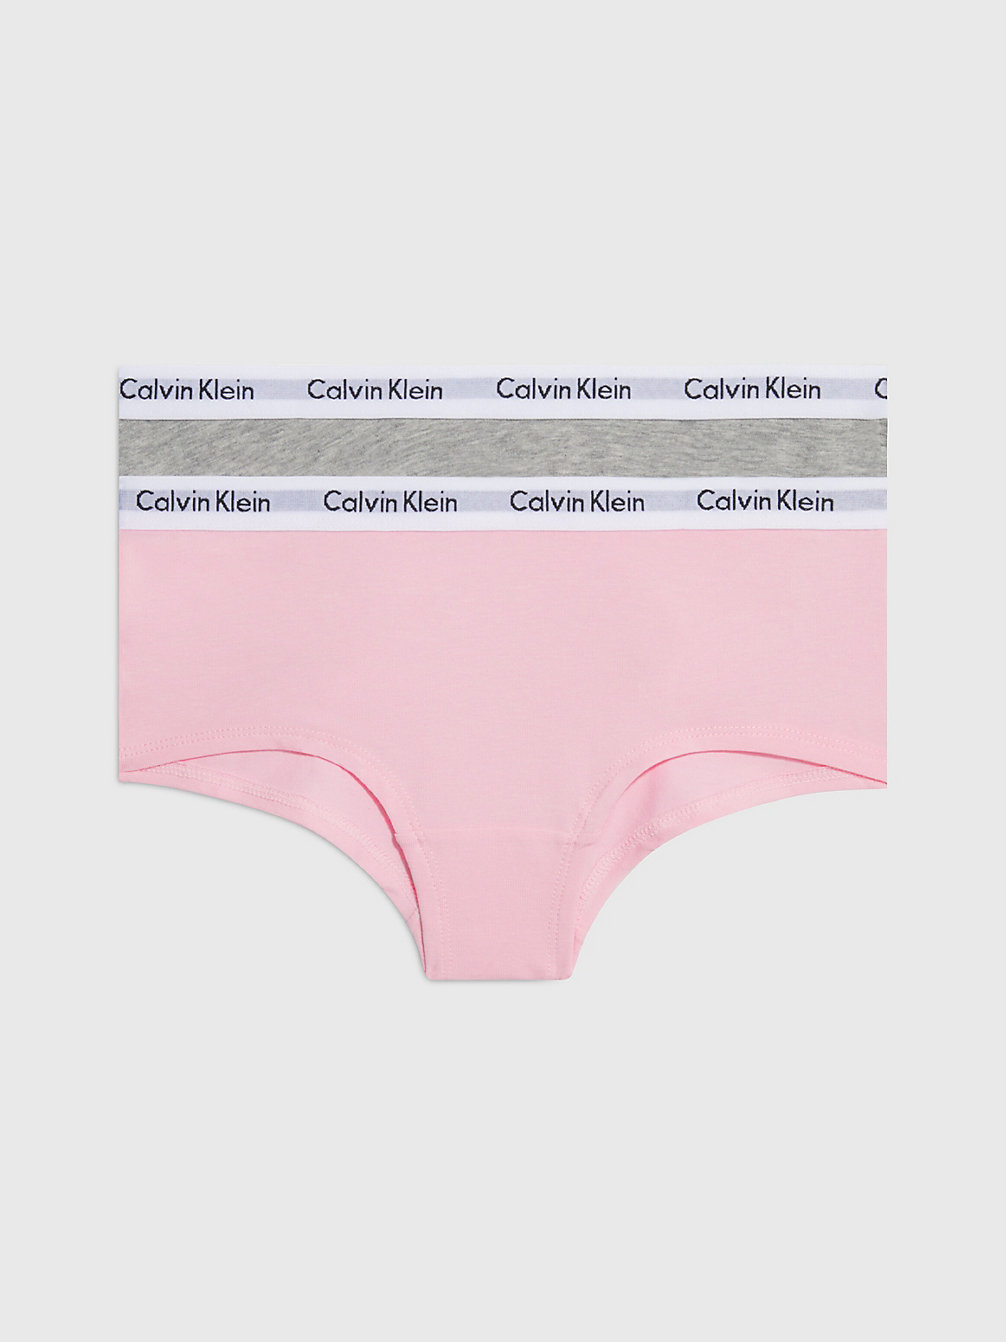 GREY HTR/UNIQUE > 2-Pack Meisjeshipsters - Modern Cotton > undefined girls - Calvin Klein